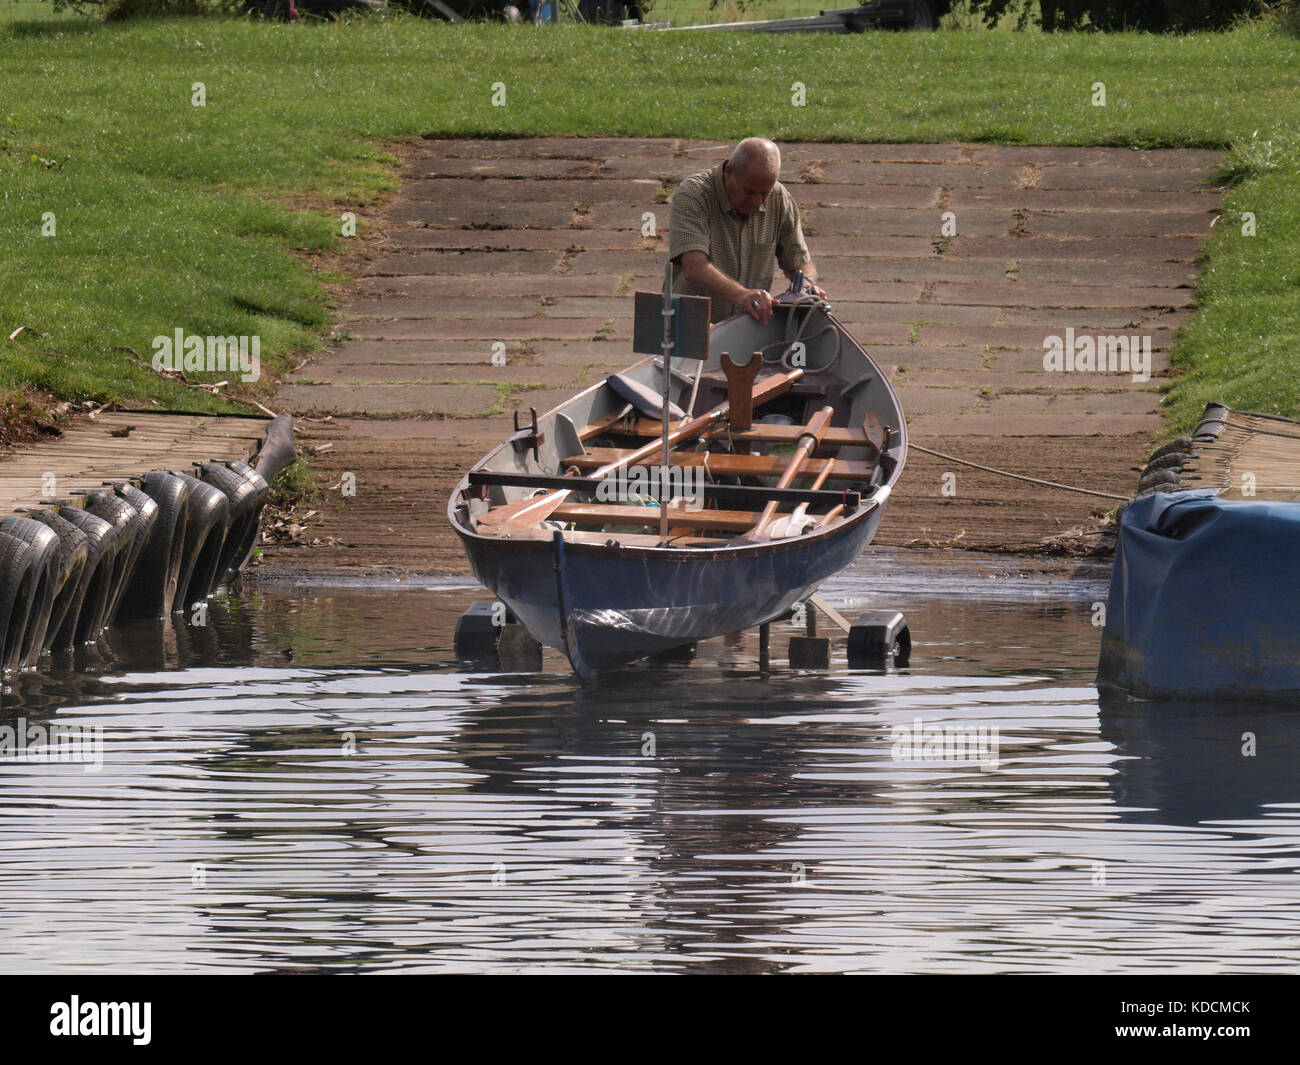 L'uomo lanciando una barca a remi su un rimorchio da uno scalo, Tewkesbury, Gloucestershire, Regno Unito Foto Stock